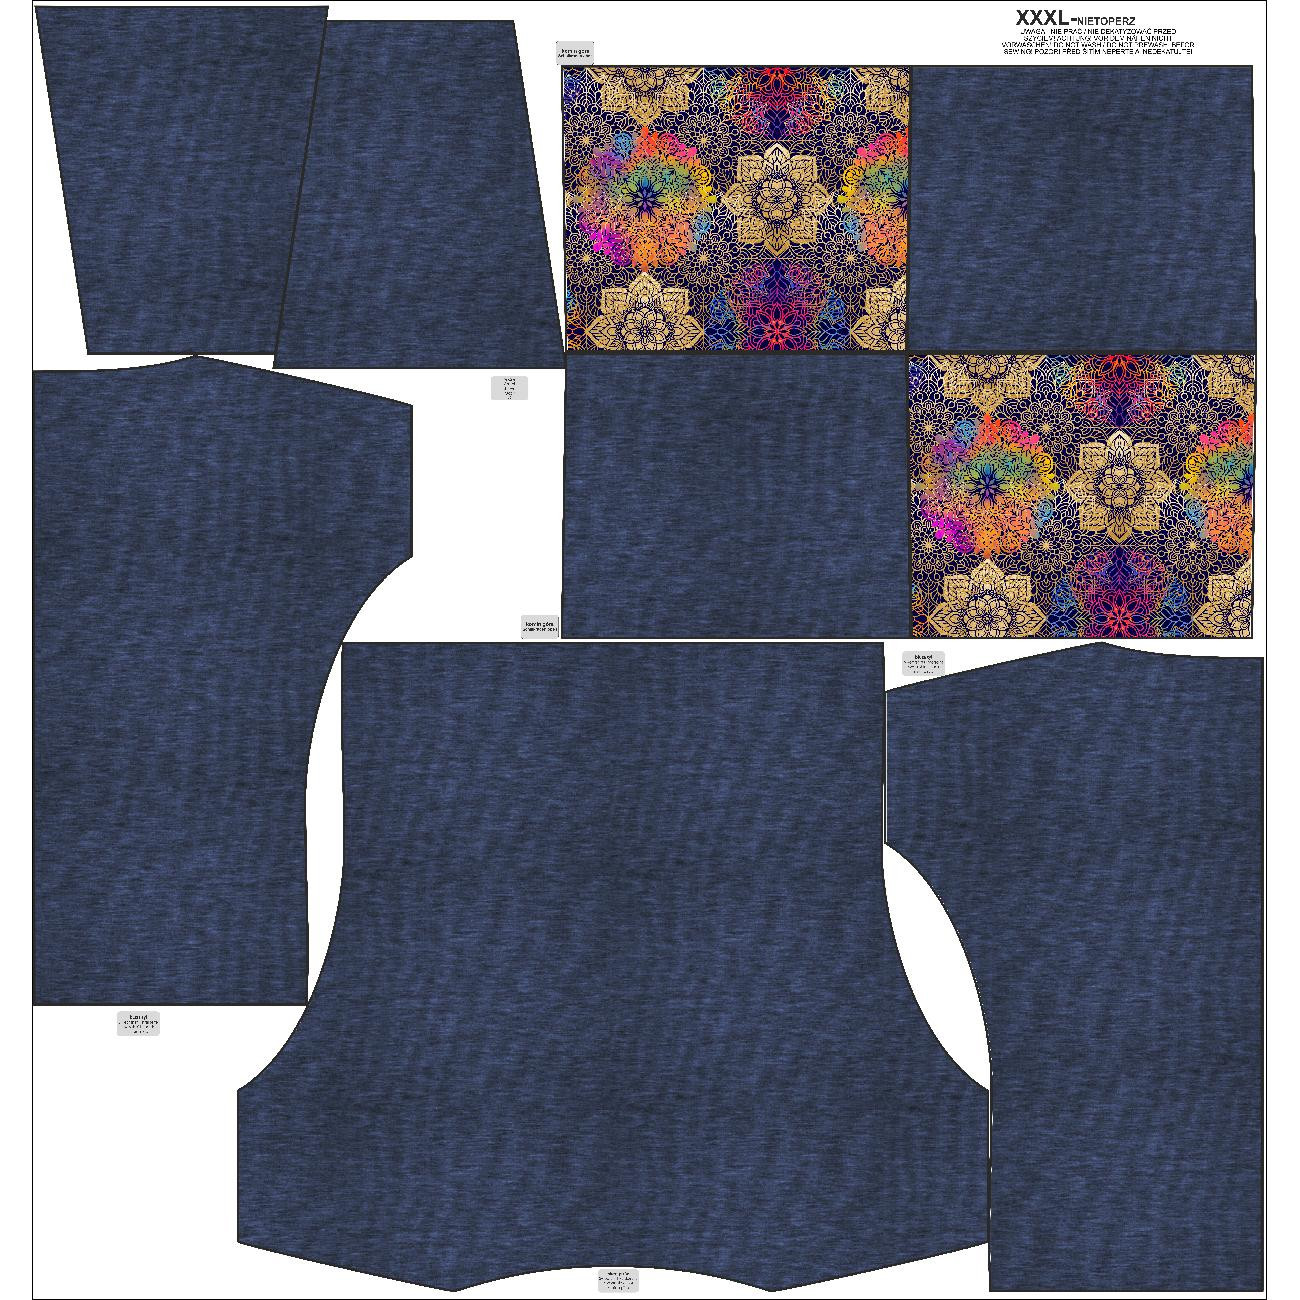 Sweatshirt mit Schalkragen und Fledermausärmel (FURIA) - MELANGE NAVY / MANDALA Ms. 2 - Nähset